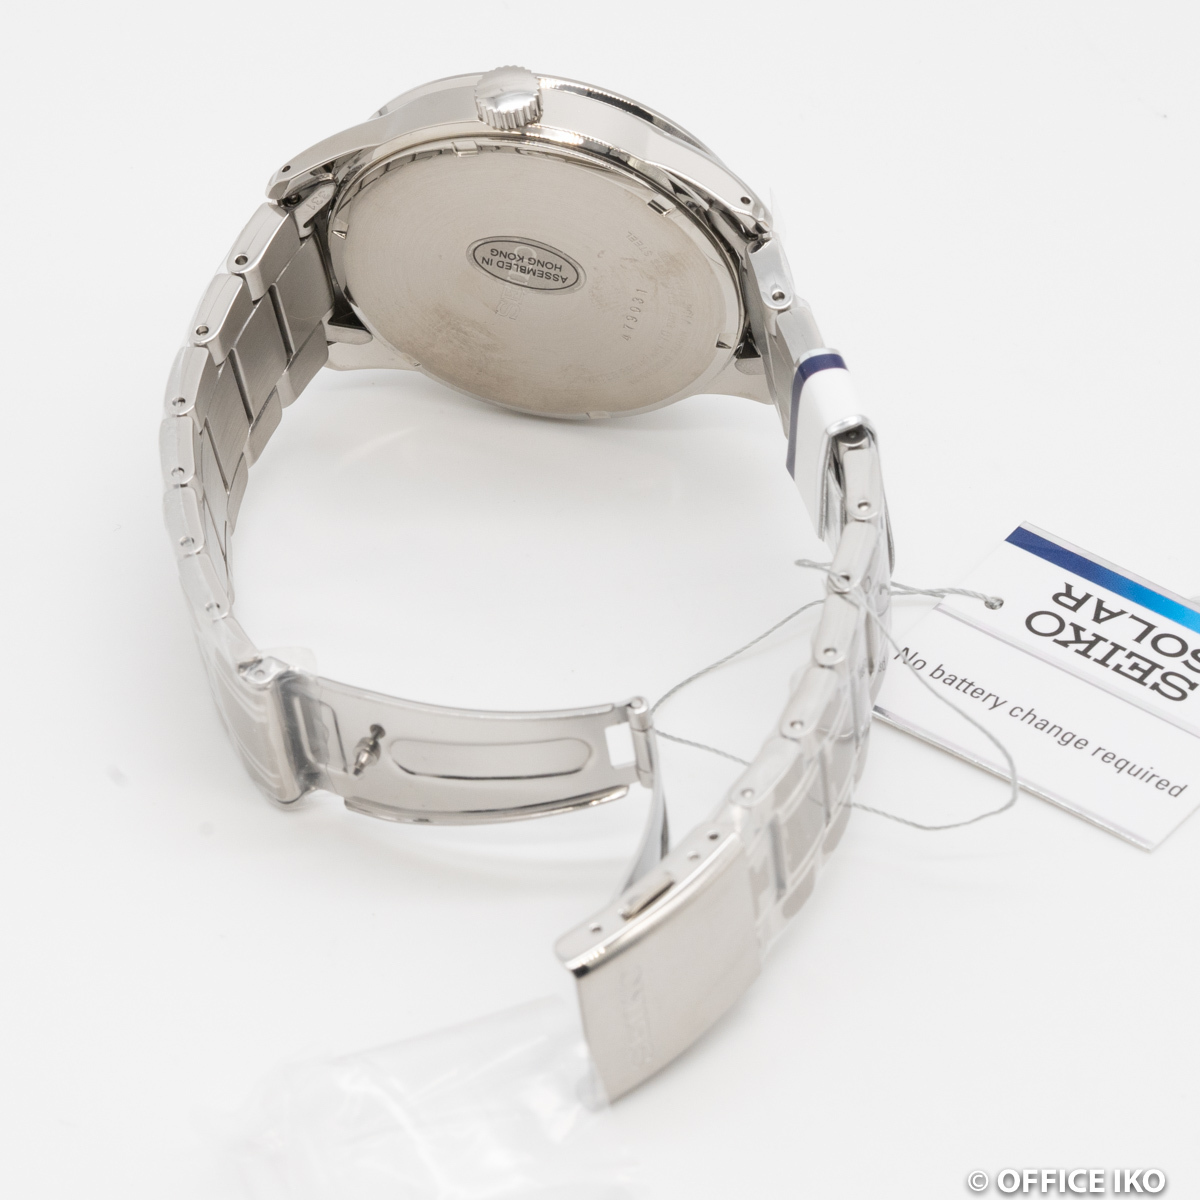  quality iko-[ Seiko ] SEIKO wristwatch SNE359P1 silver solar quarts men's foreign model new goods 